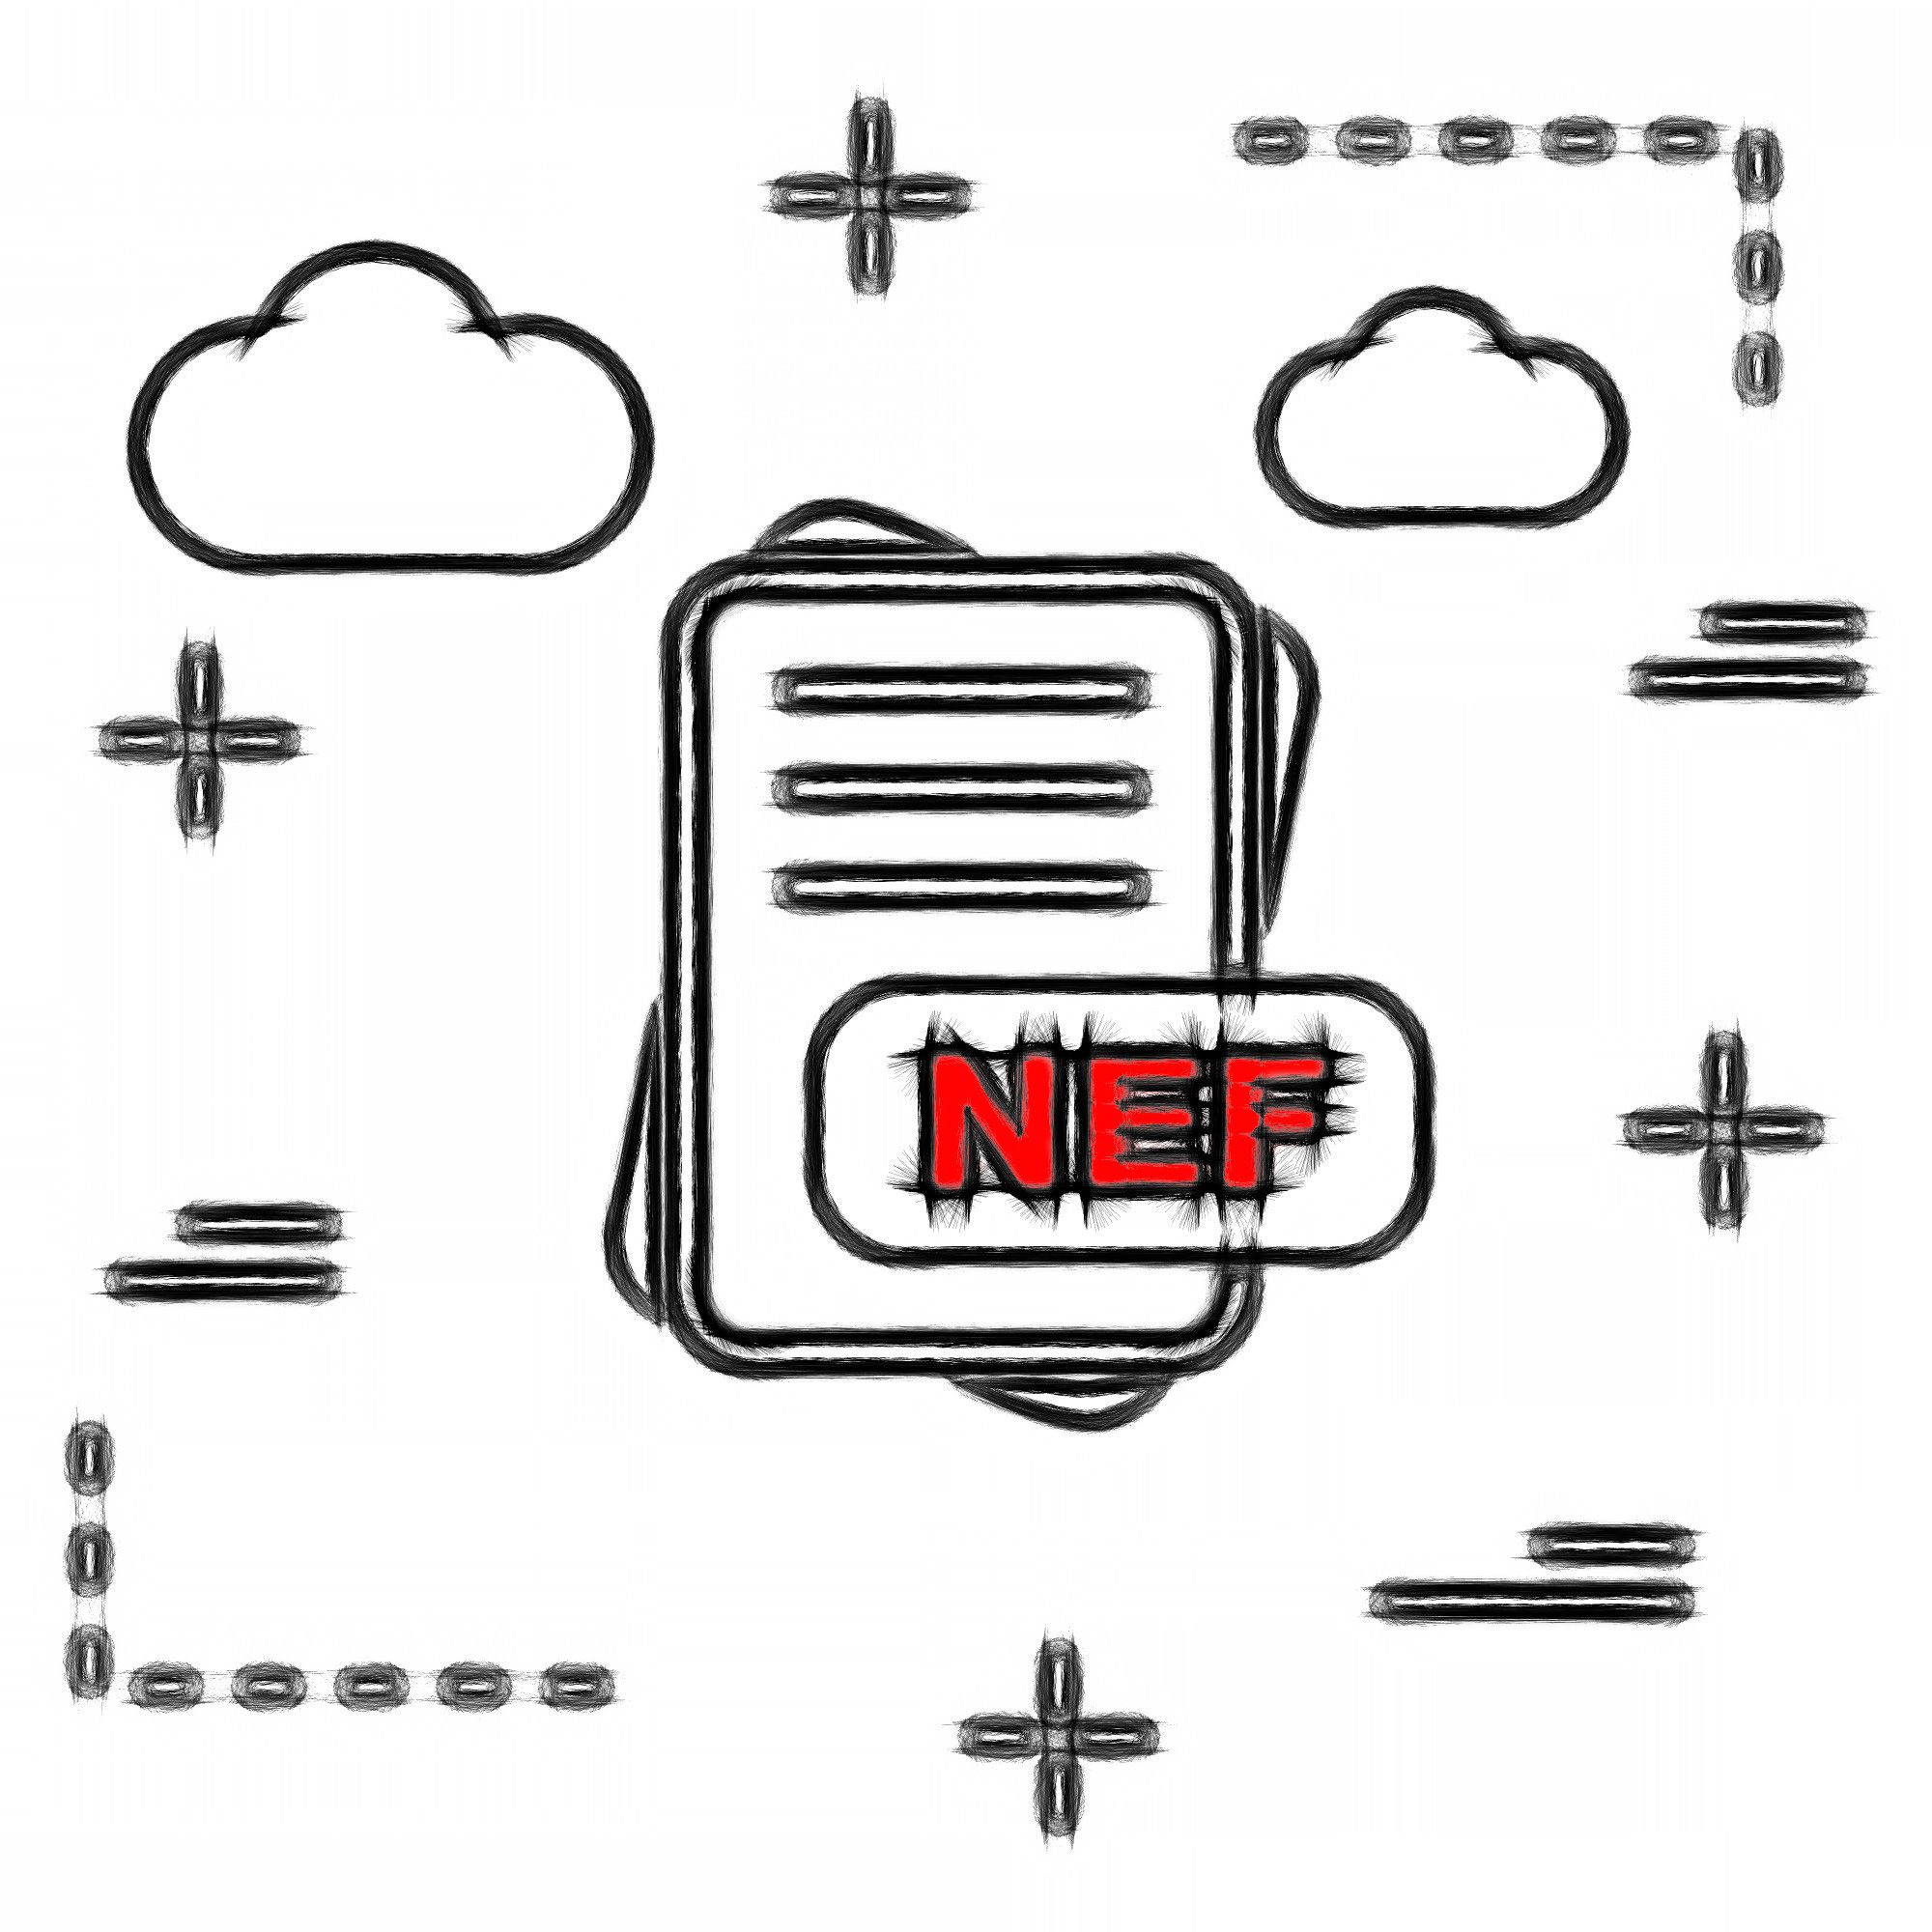 NEF-filformatet..